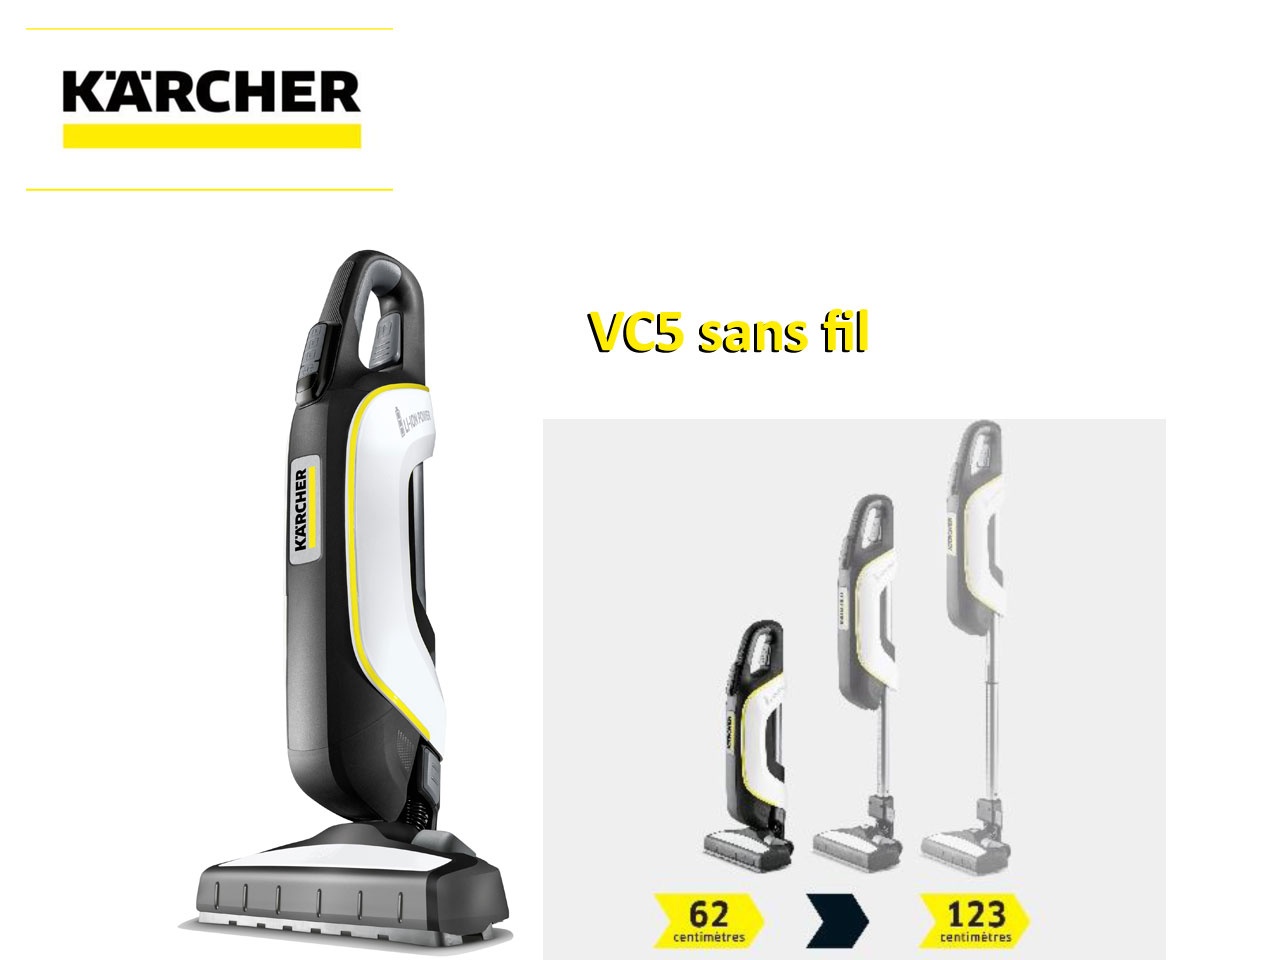 L’aspirateur VC5 de Kärcher disponible en version sans fil